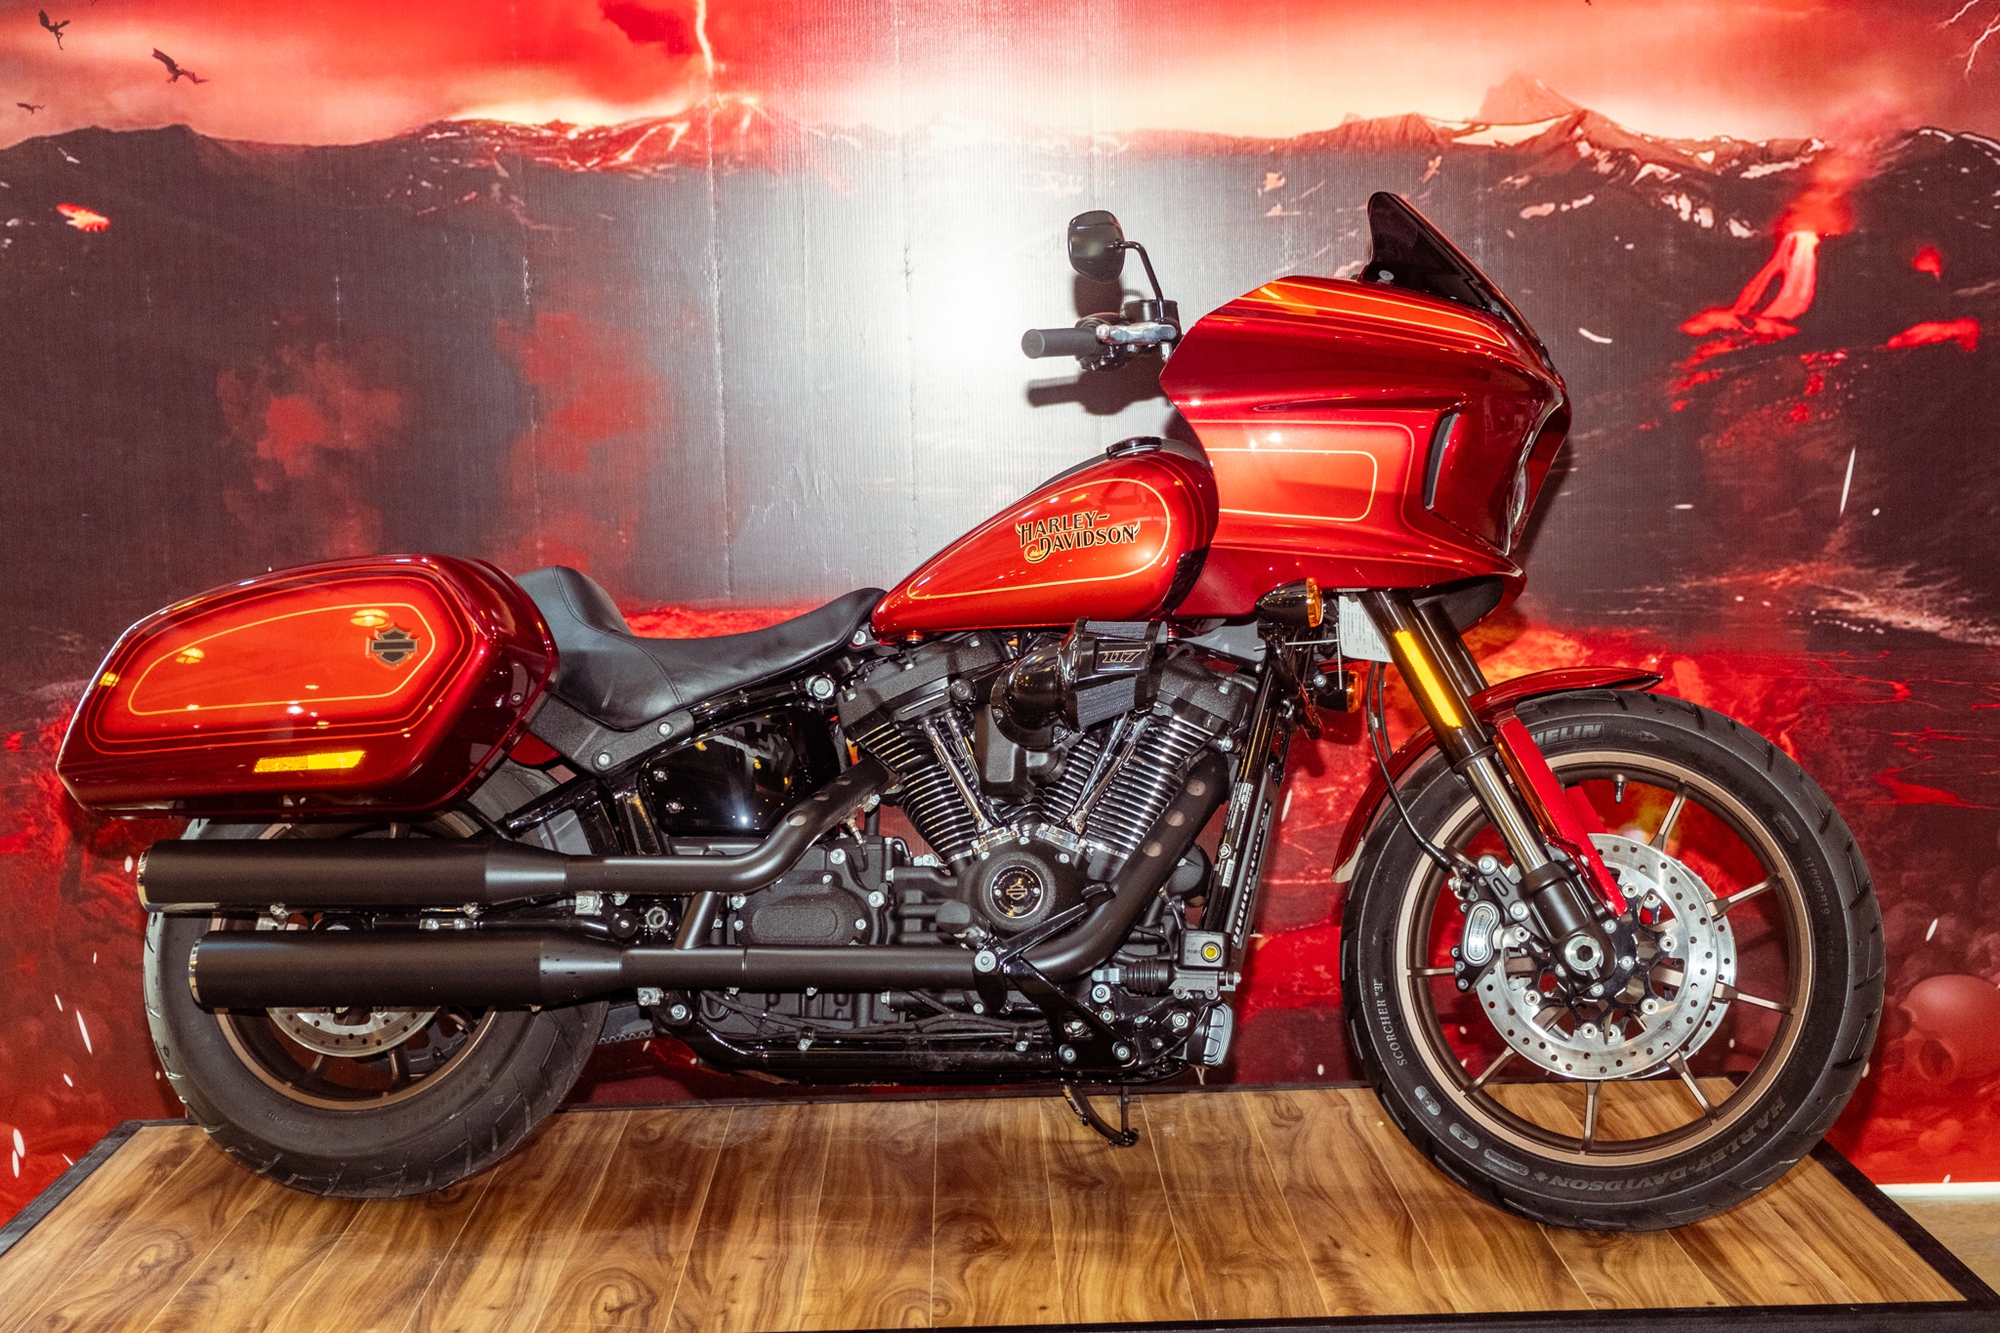 Chiêm ngưỡng lớp sơn 200 triệu đồng trên Harley-Davidson - Ảnh 2.